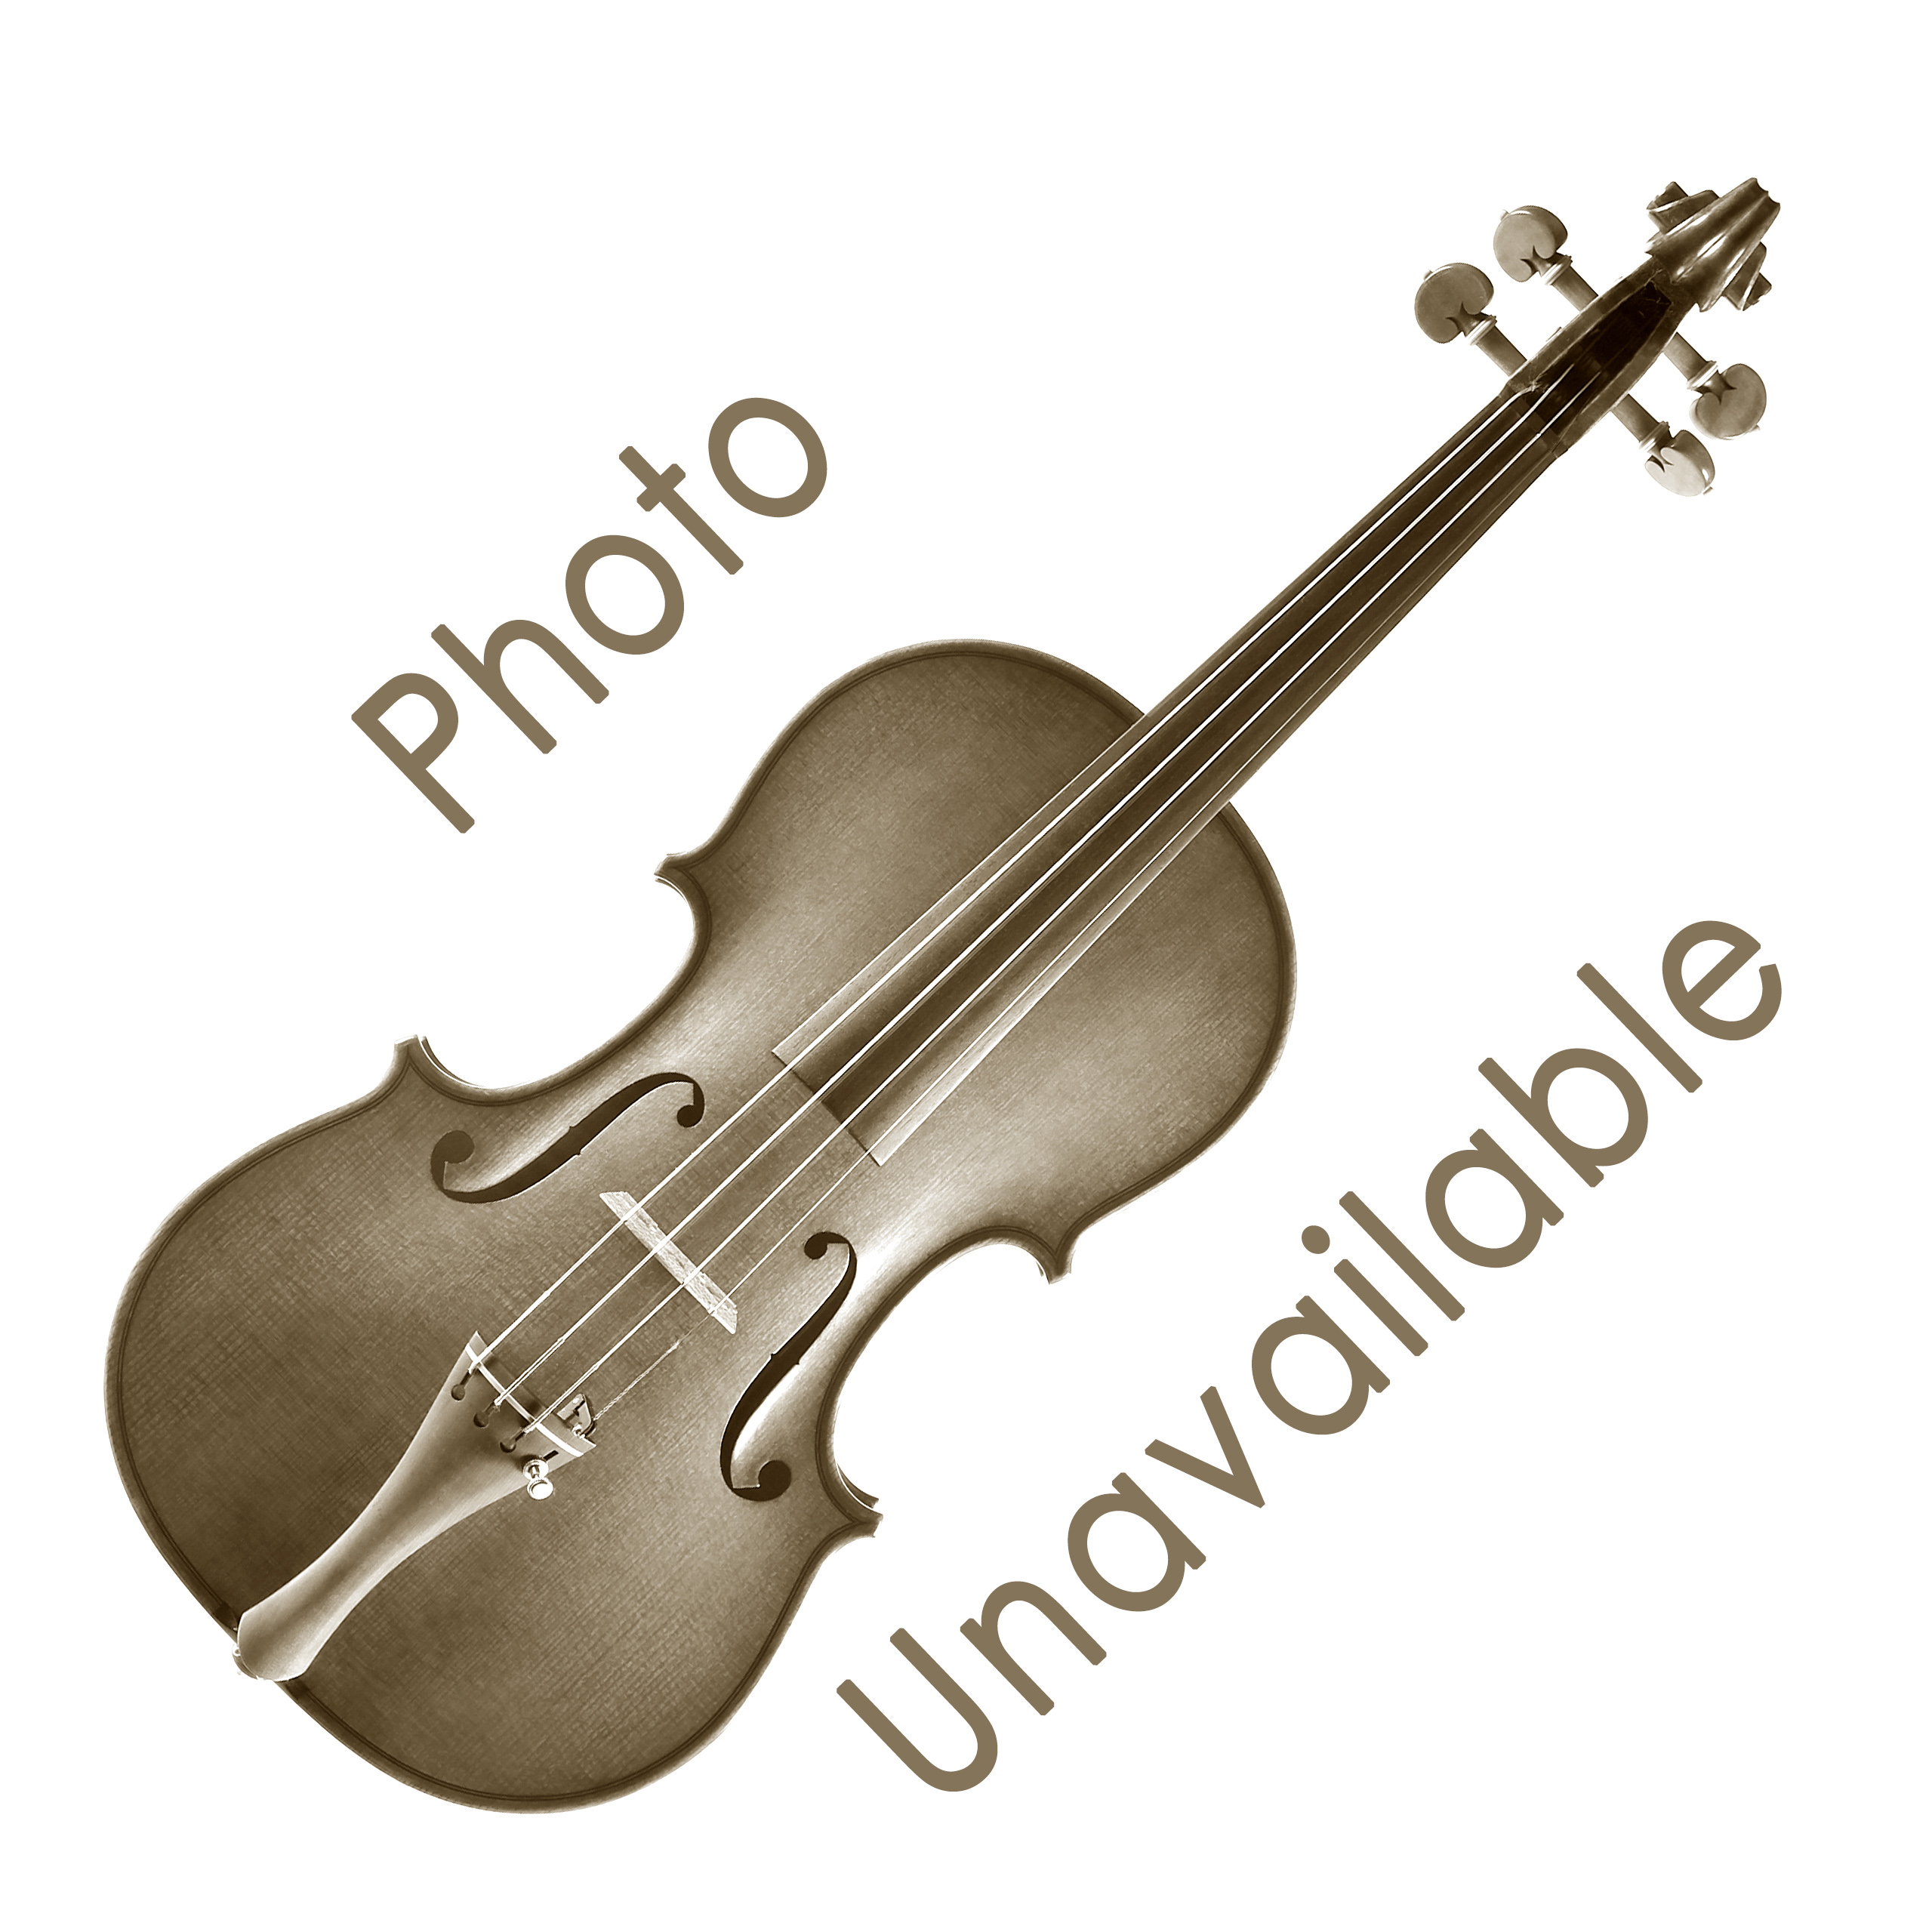 Bon Musica Shoulder Rest for Violin/Viola - Violin 1/8